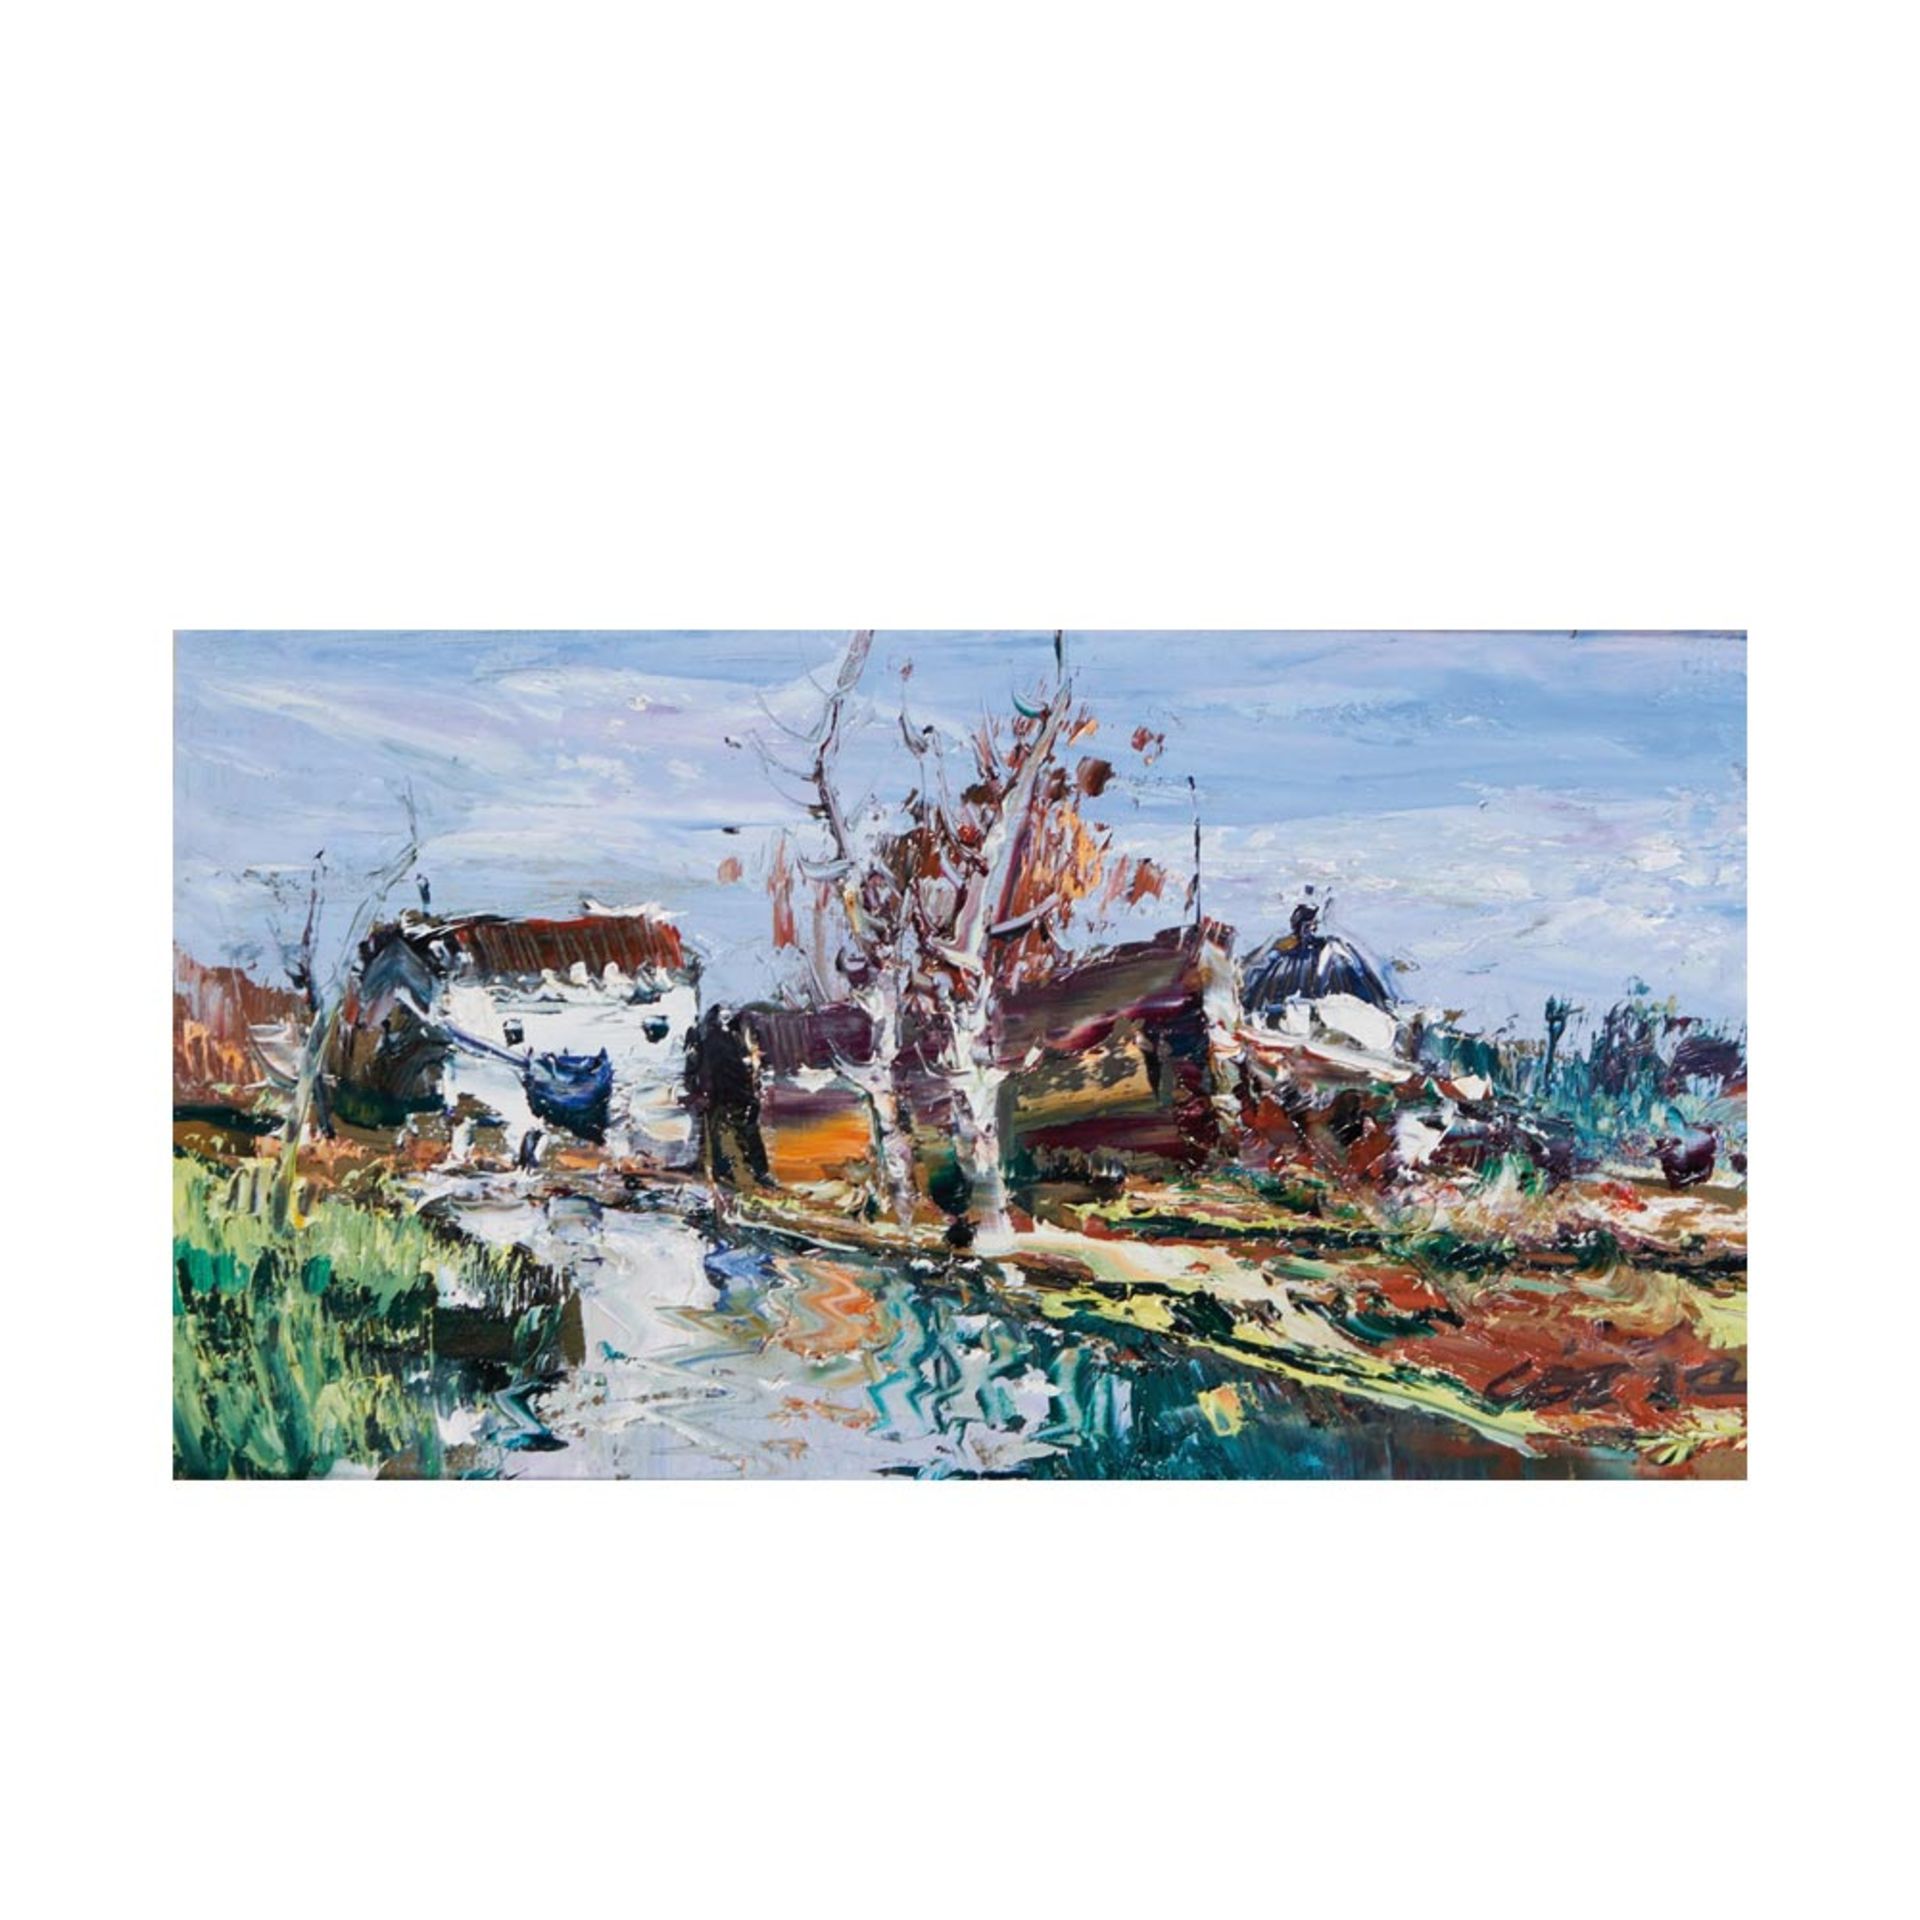 Landscape. Oil on panel